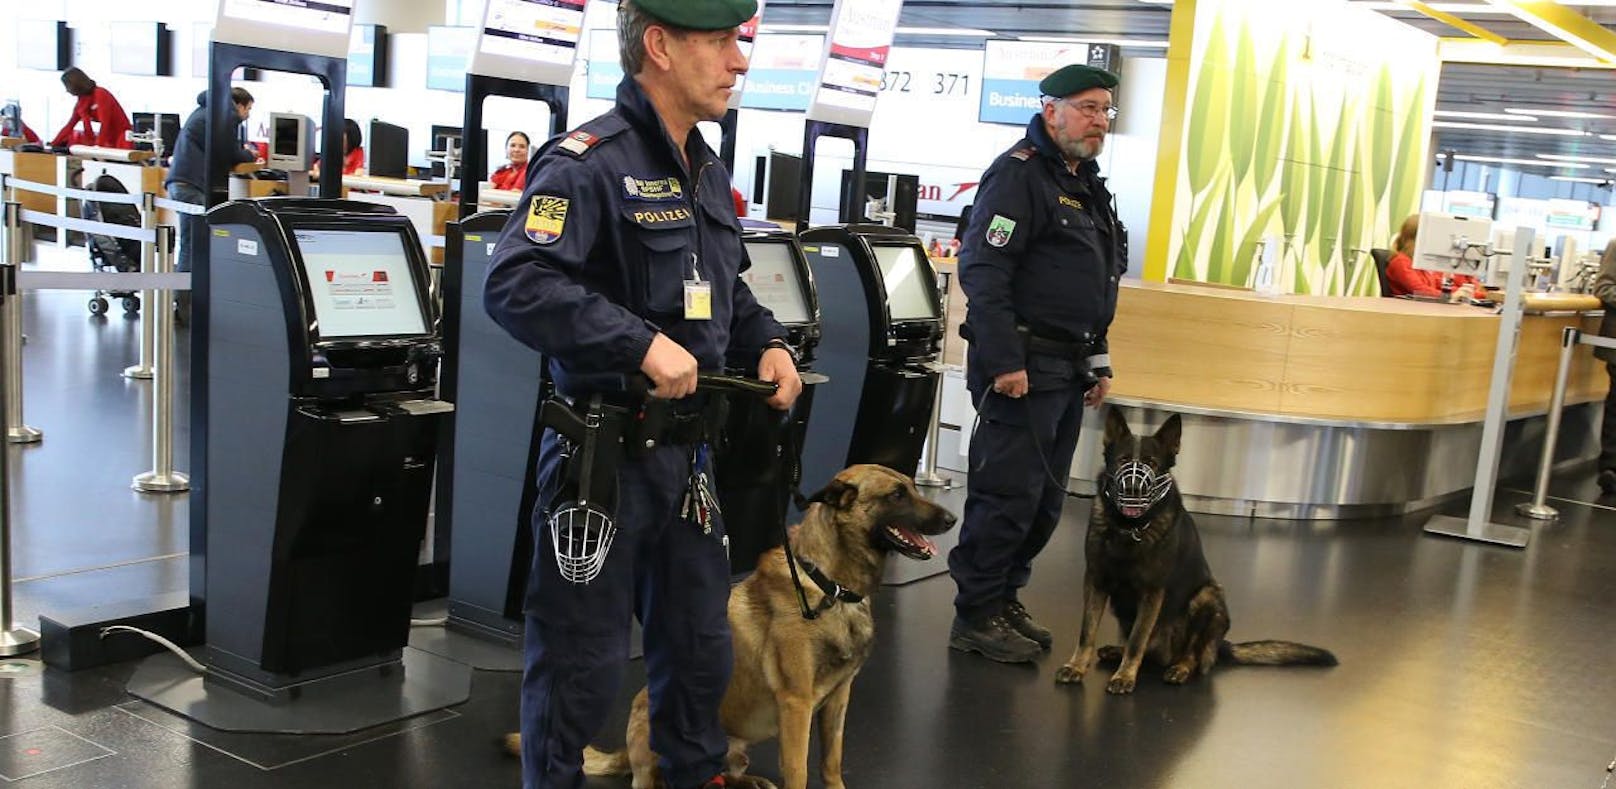 Der Vorfall ereignete sich am Flughafen Wien-Schwechat (Bild: Flughafen Wien)